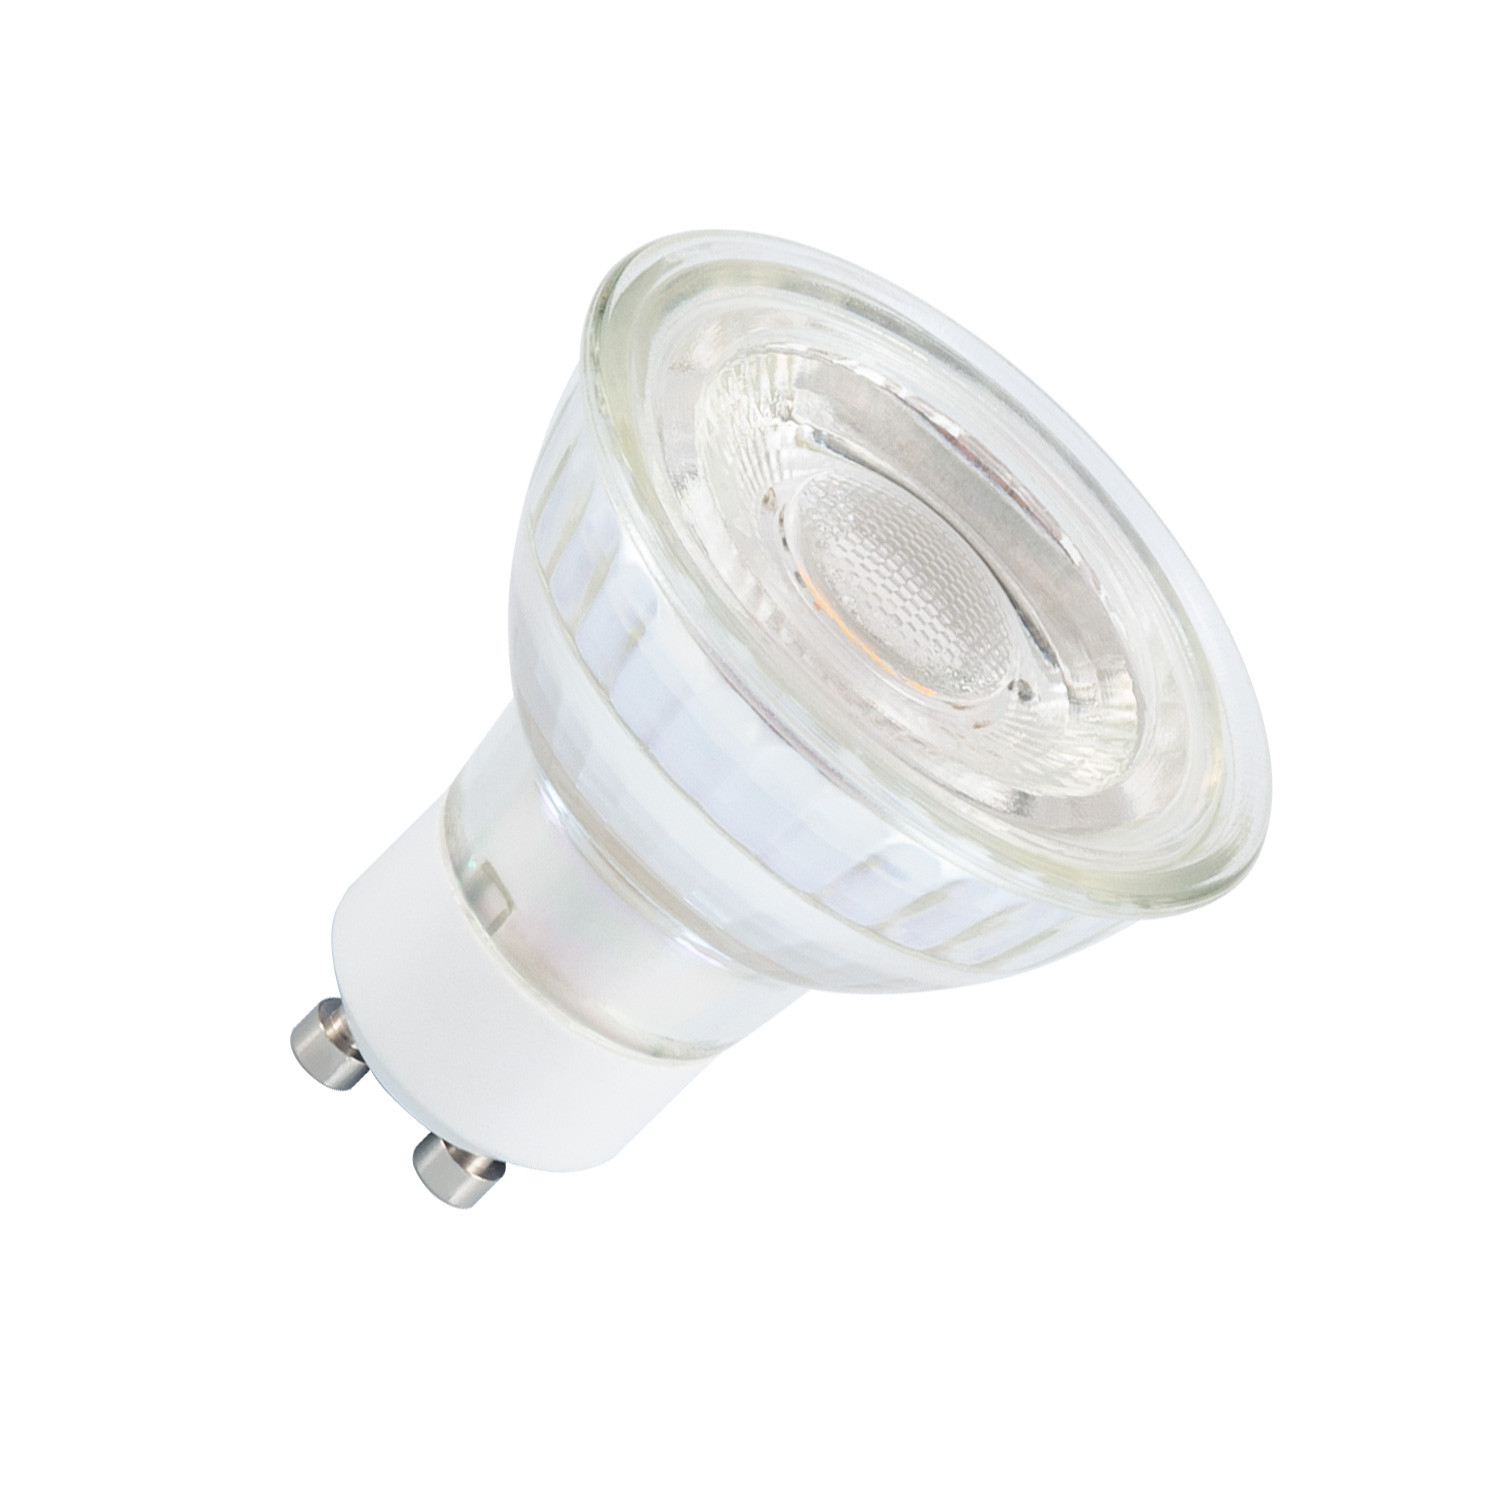 Product of 7W GU10 500 lm Glass LED Bulb